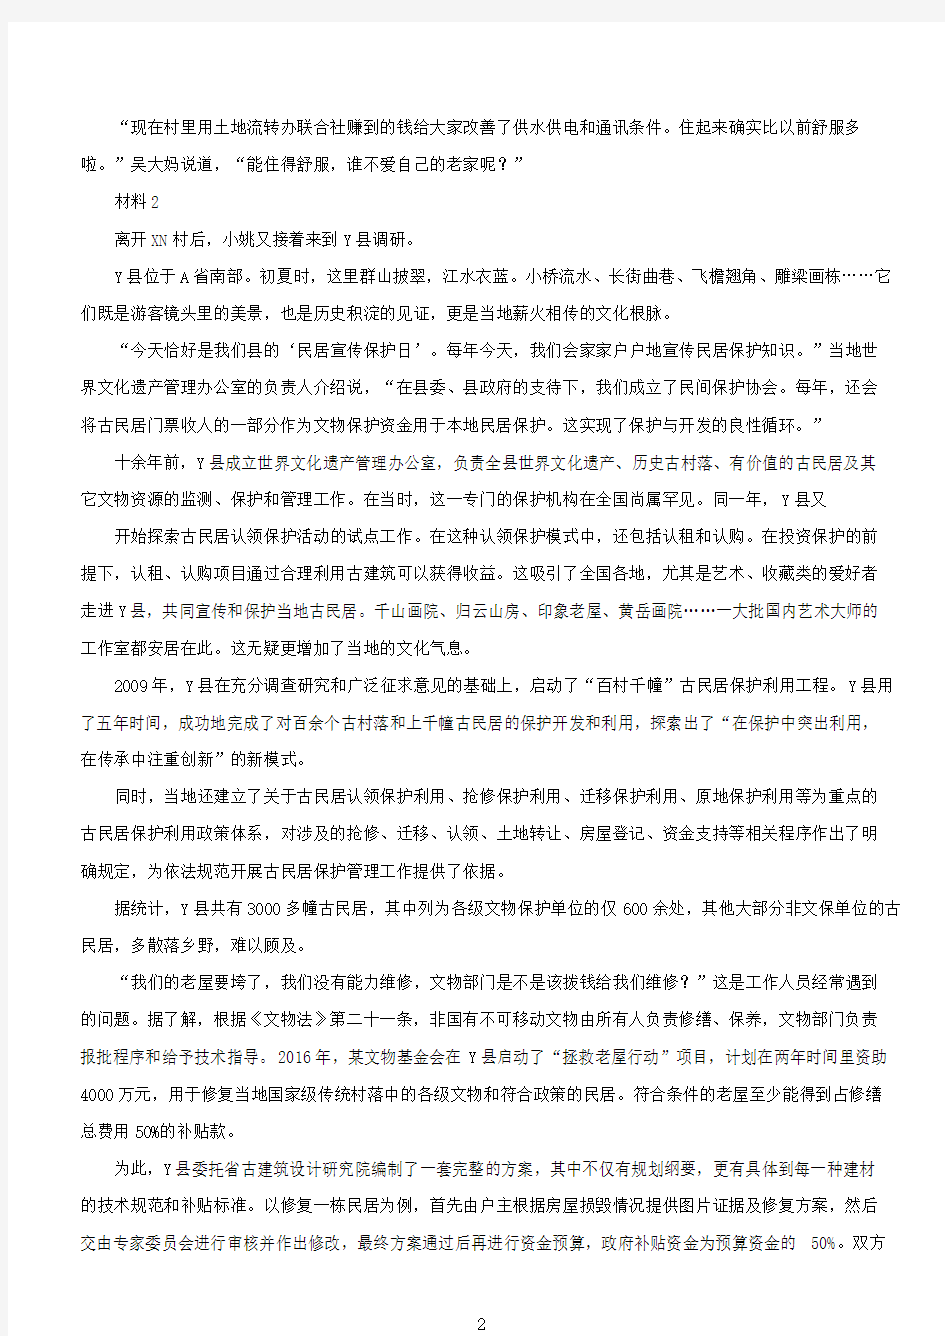 2019年河南公务员申论考试真题及答案